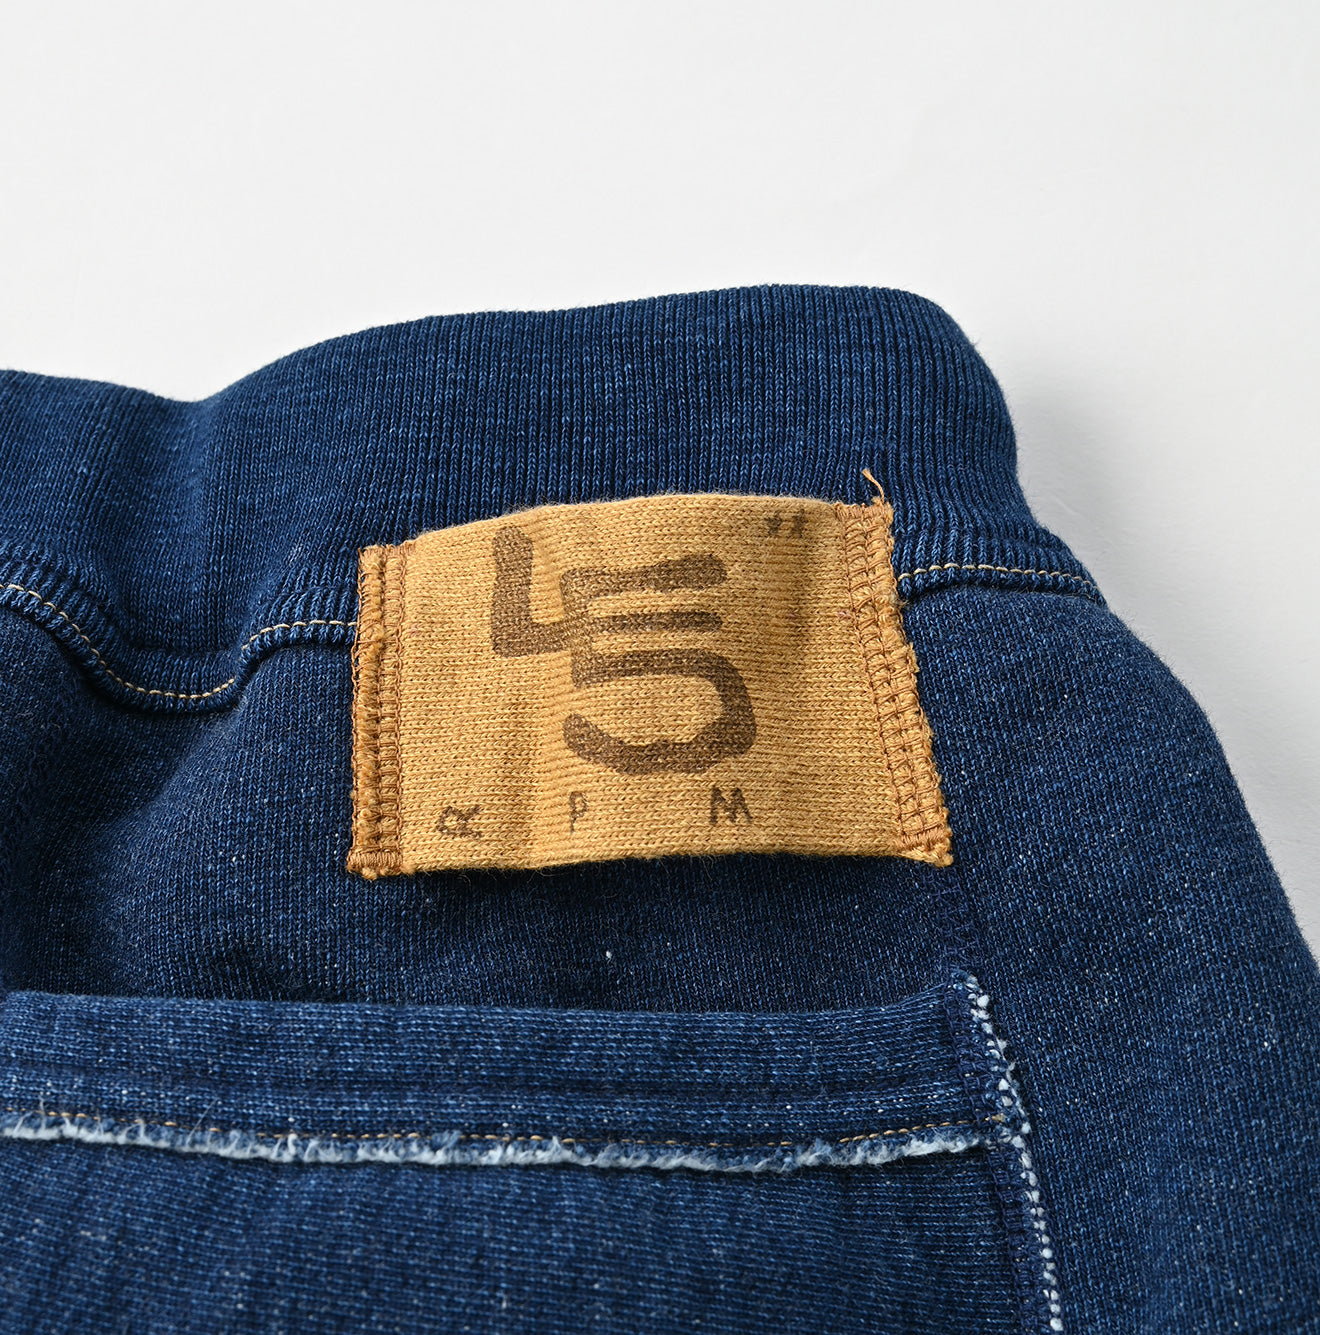 Indigo Premium Cotton Fleece Pants Zyu – 45R Global